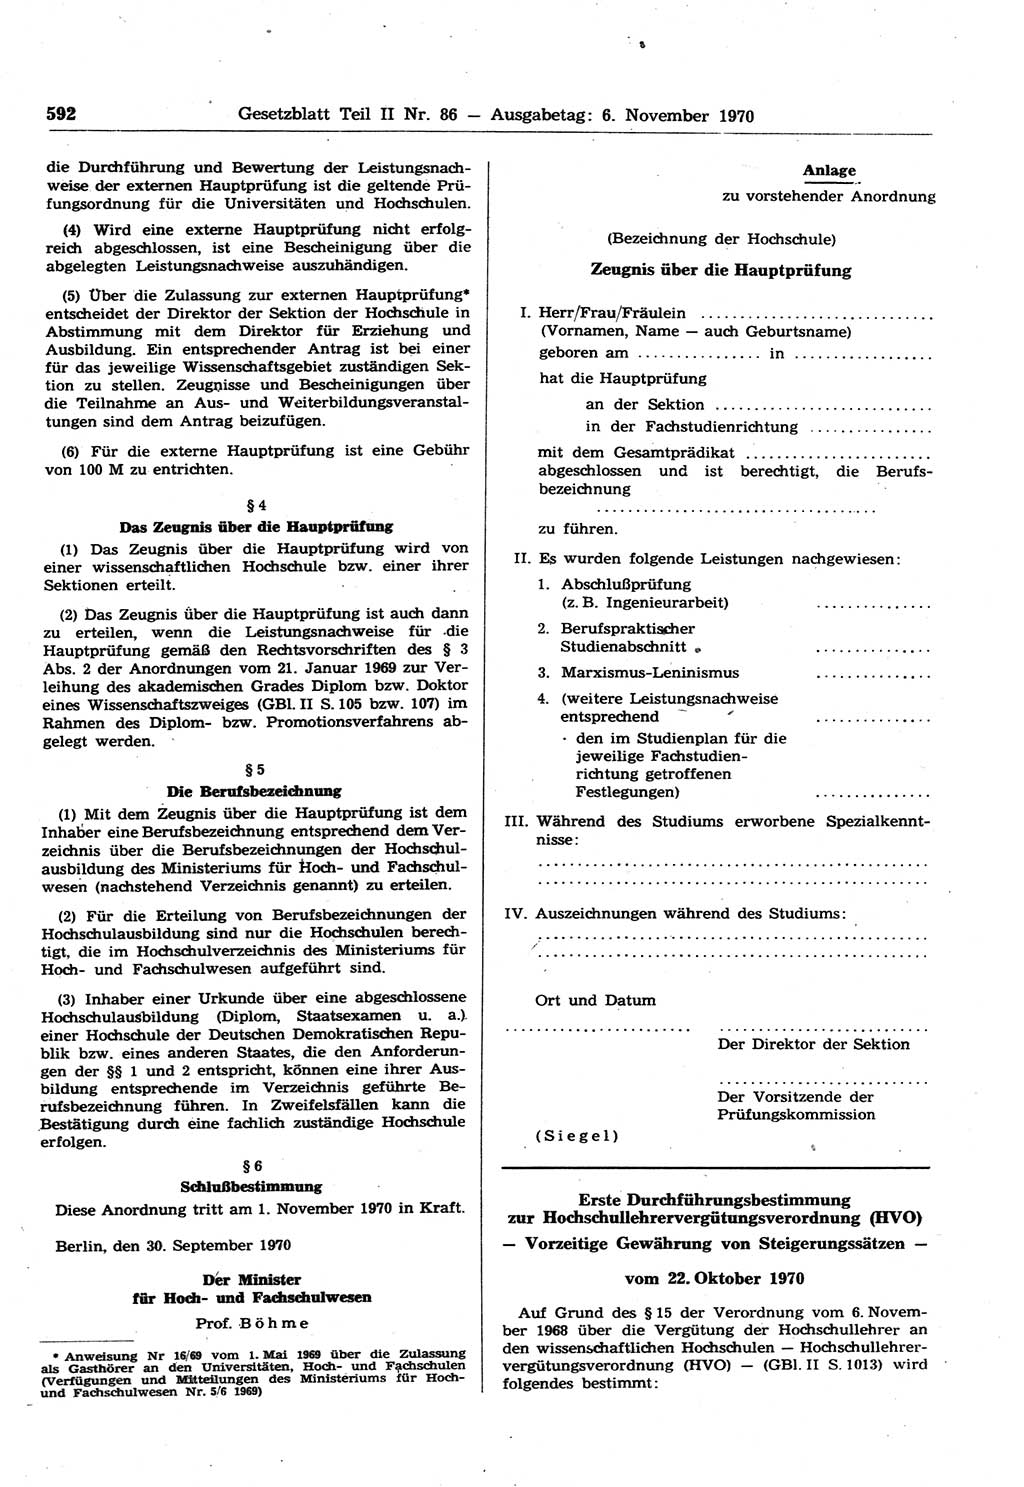 Gesetzblatt (GBl.) der Deutschen Demokratischen Republik (DDR) Teil ⅠⅠ 1970, Seite 592 (GBl. DDR ⅠⅠ 1970, S. 592)